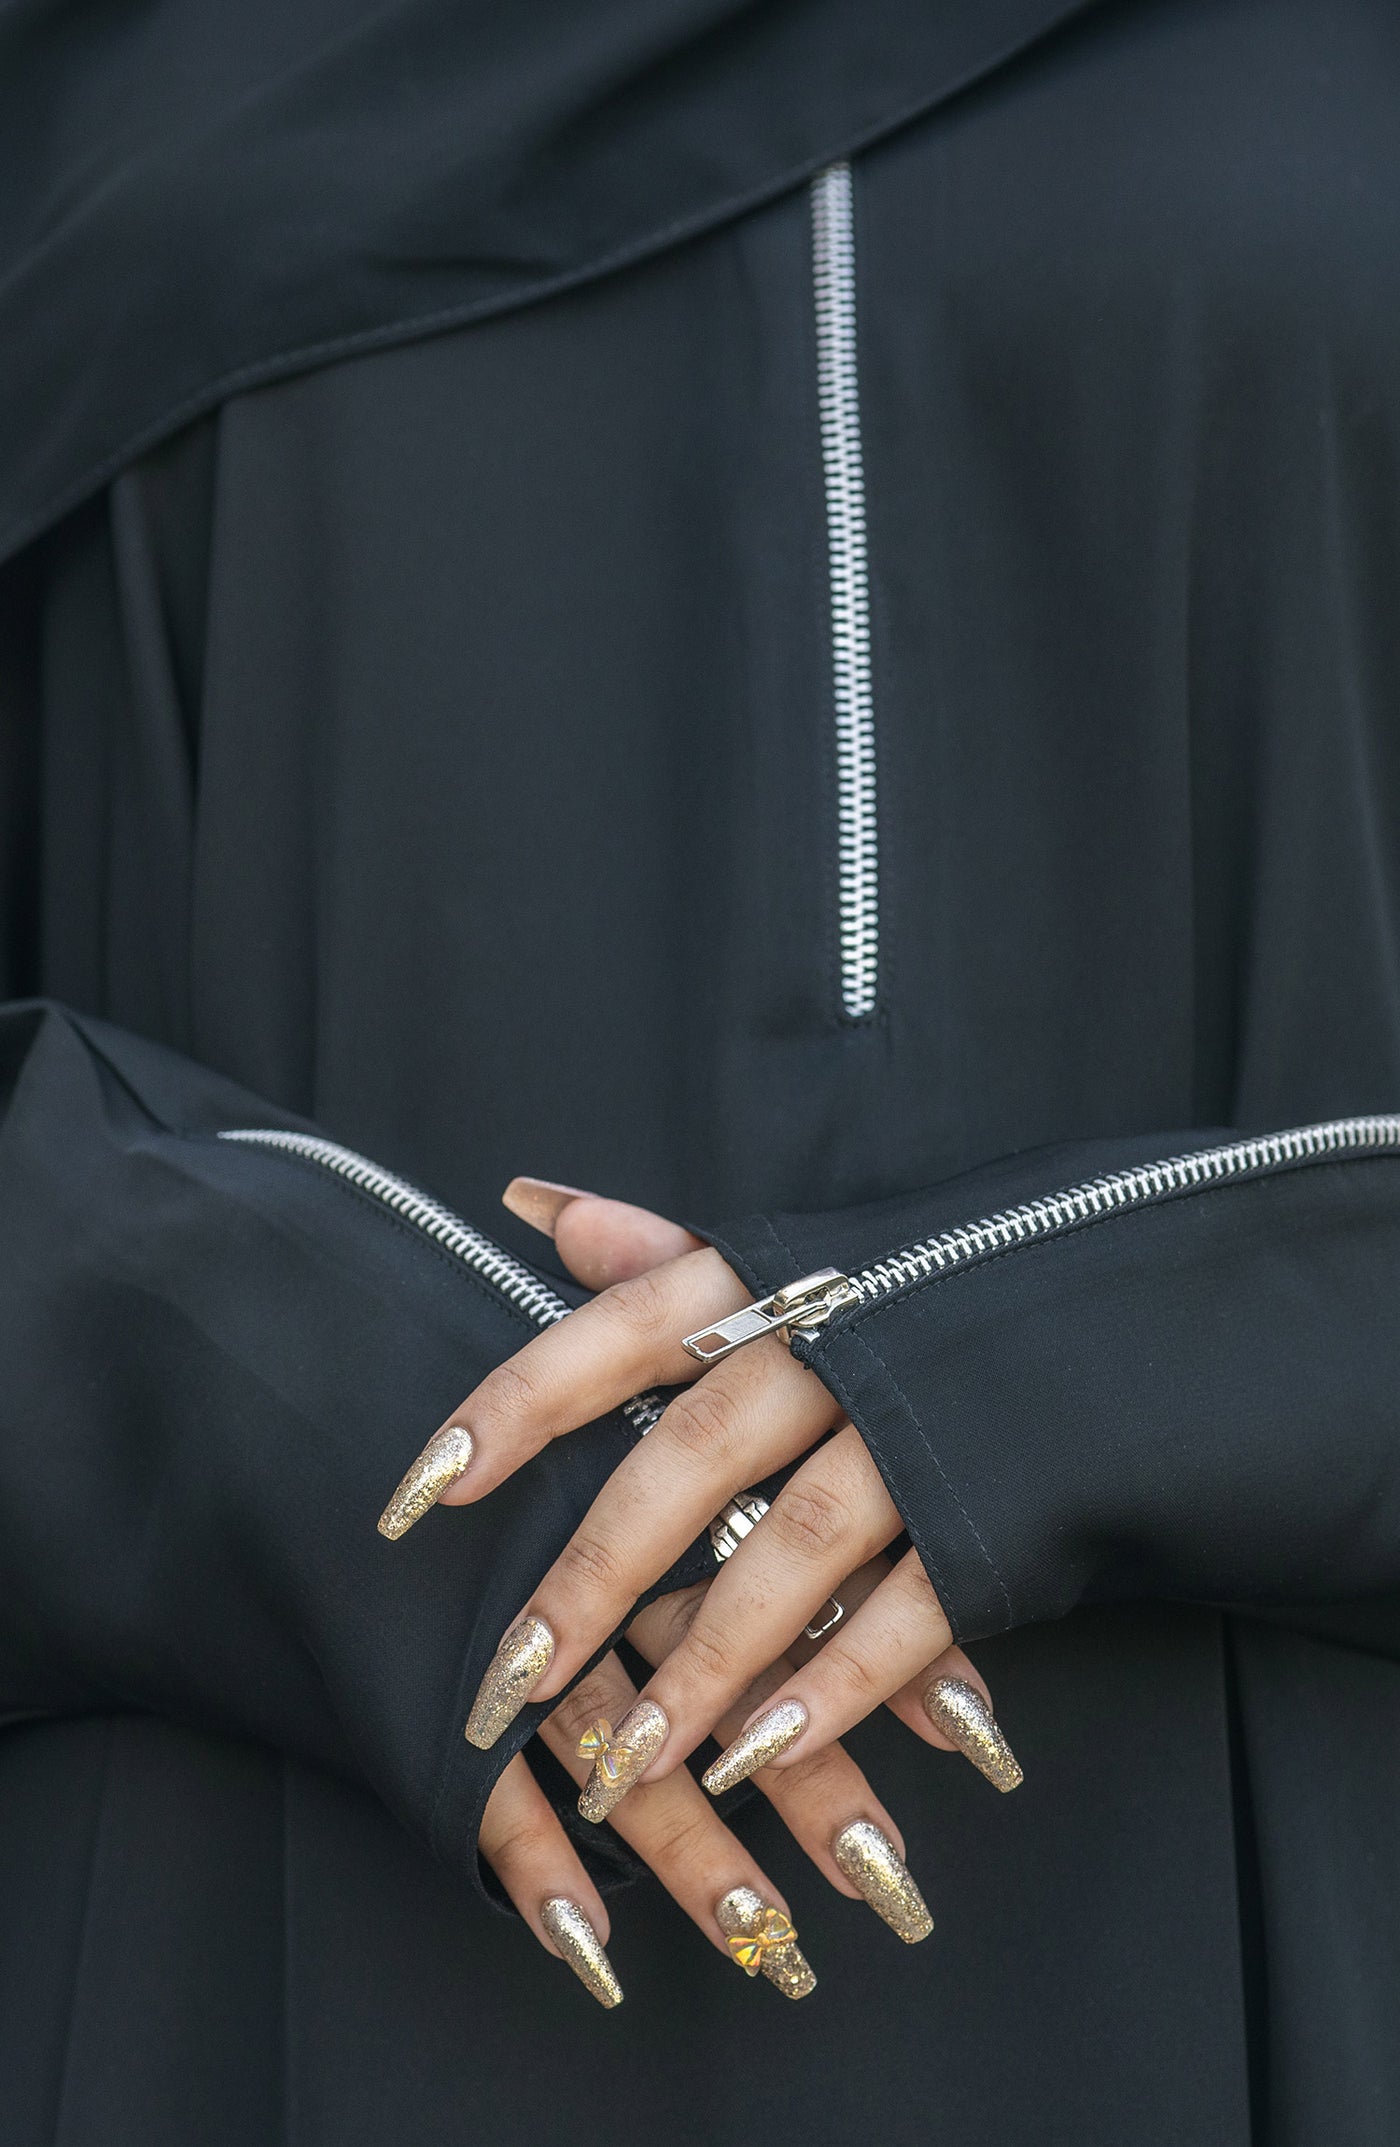 black nida abaya with metallic zipper on neckline and sleeves